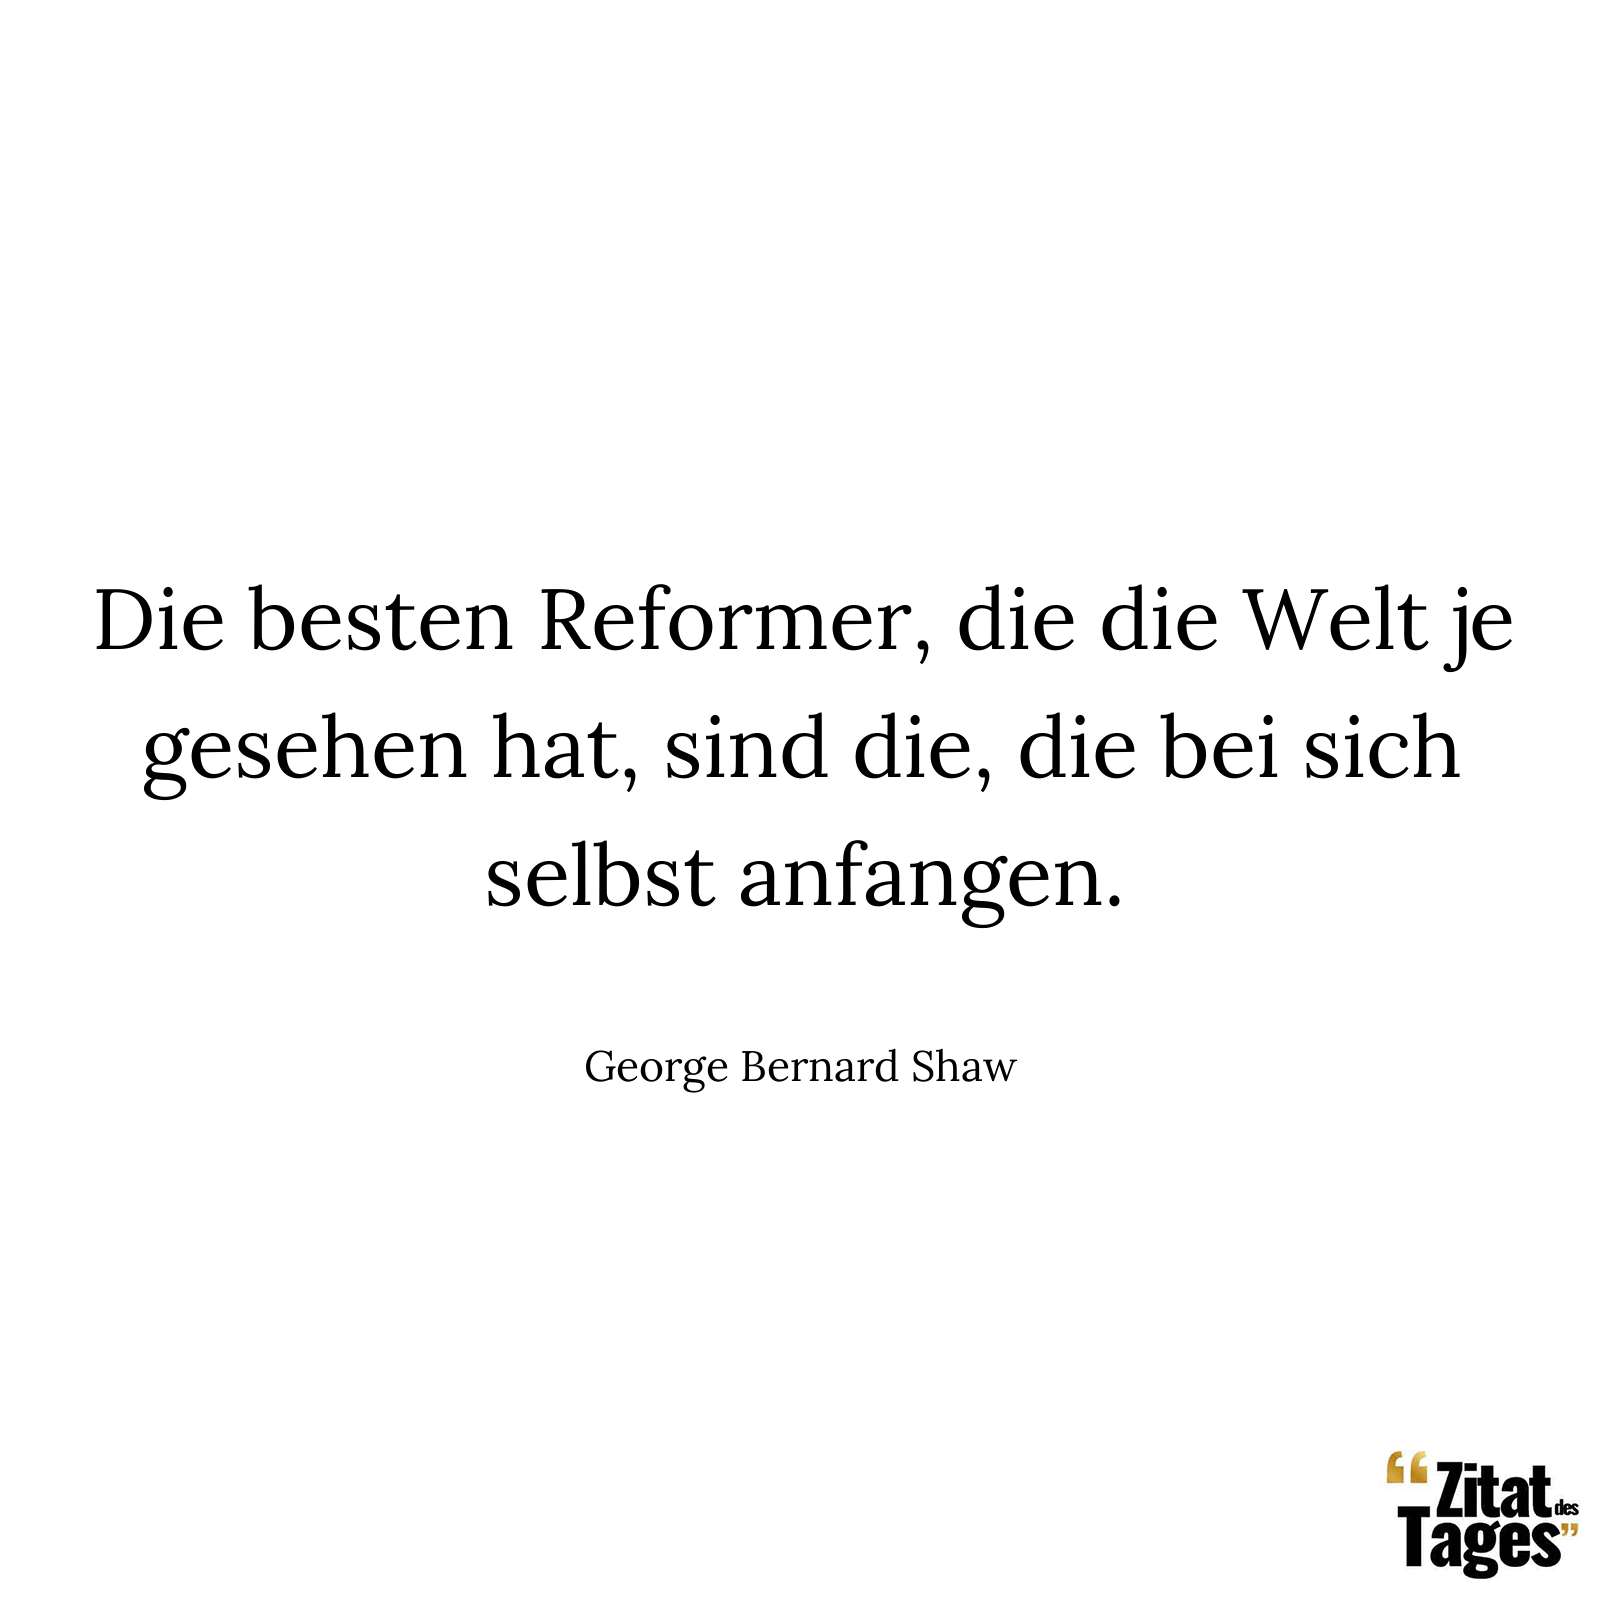 Die besten Reformer, die die Welt je gesehen hat, sind die, die bei sich selbst anfangen. - George Bernard Shaw